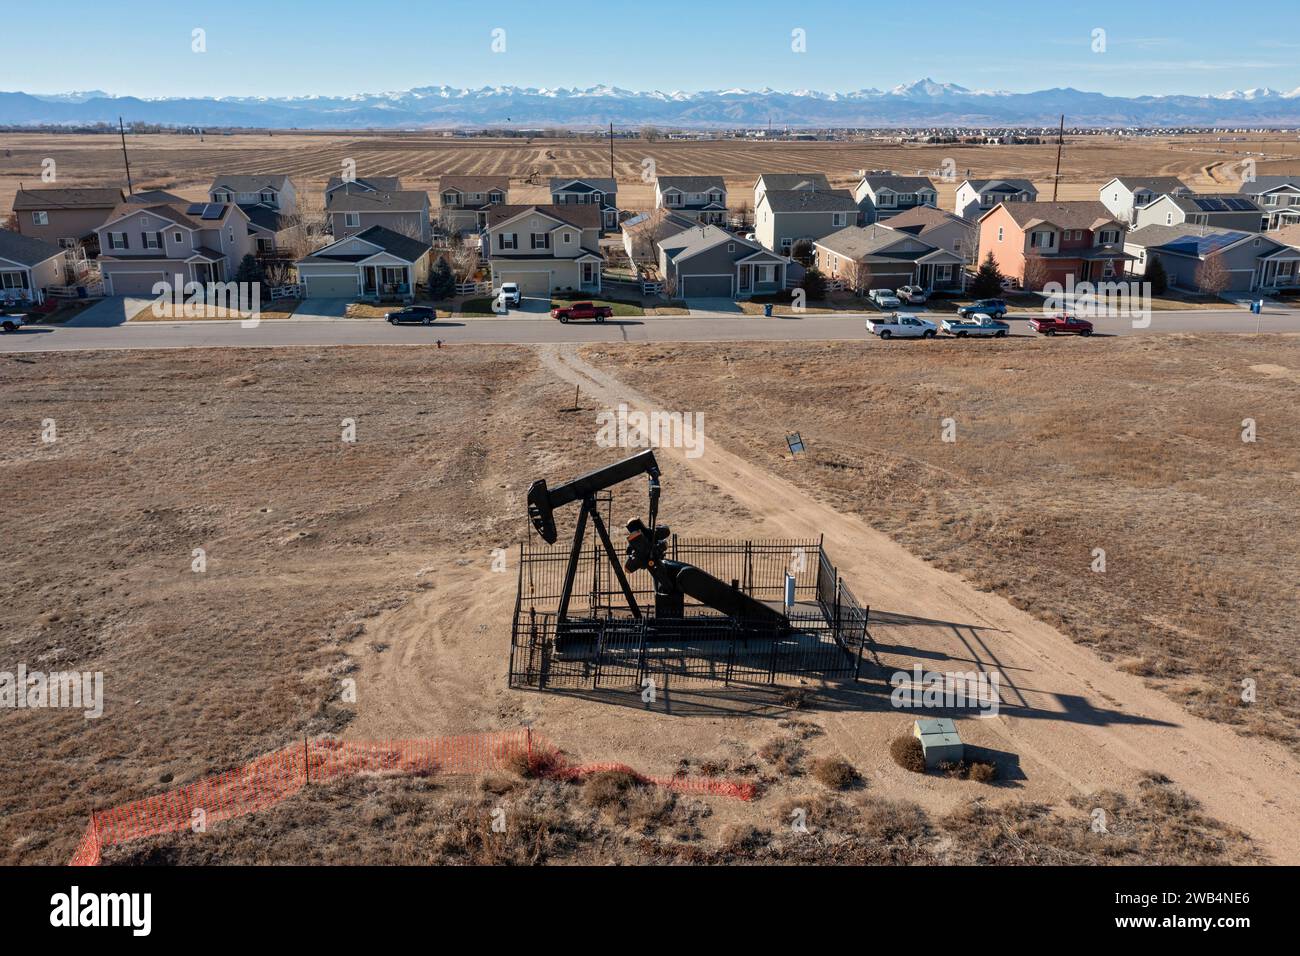 Frederick, Colorado - Un pozo de petróleo cerca de una subdivisión de viviendas en el rango frontal de Colorado. Foto de stock